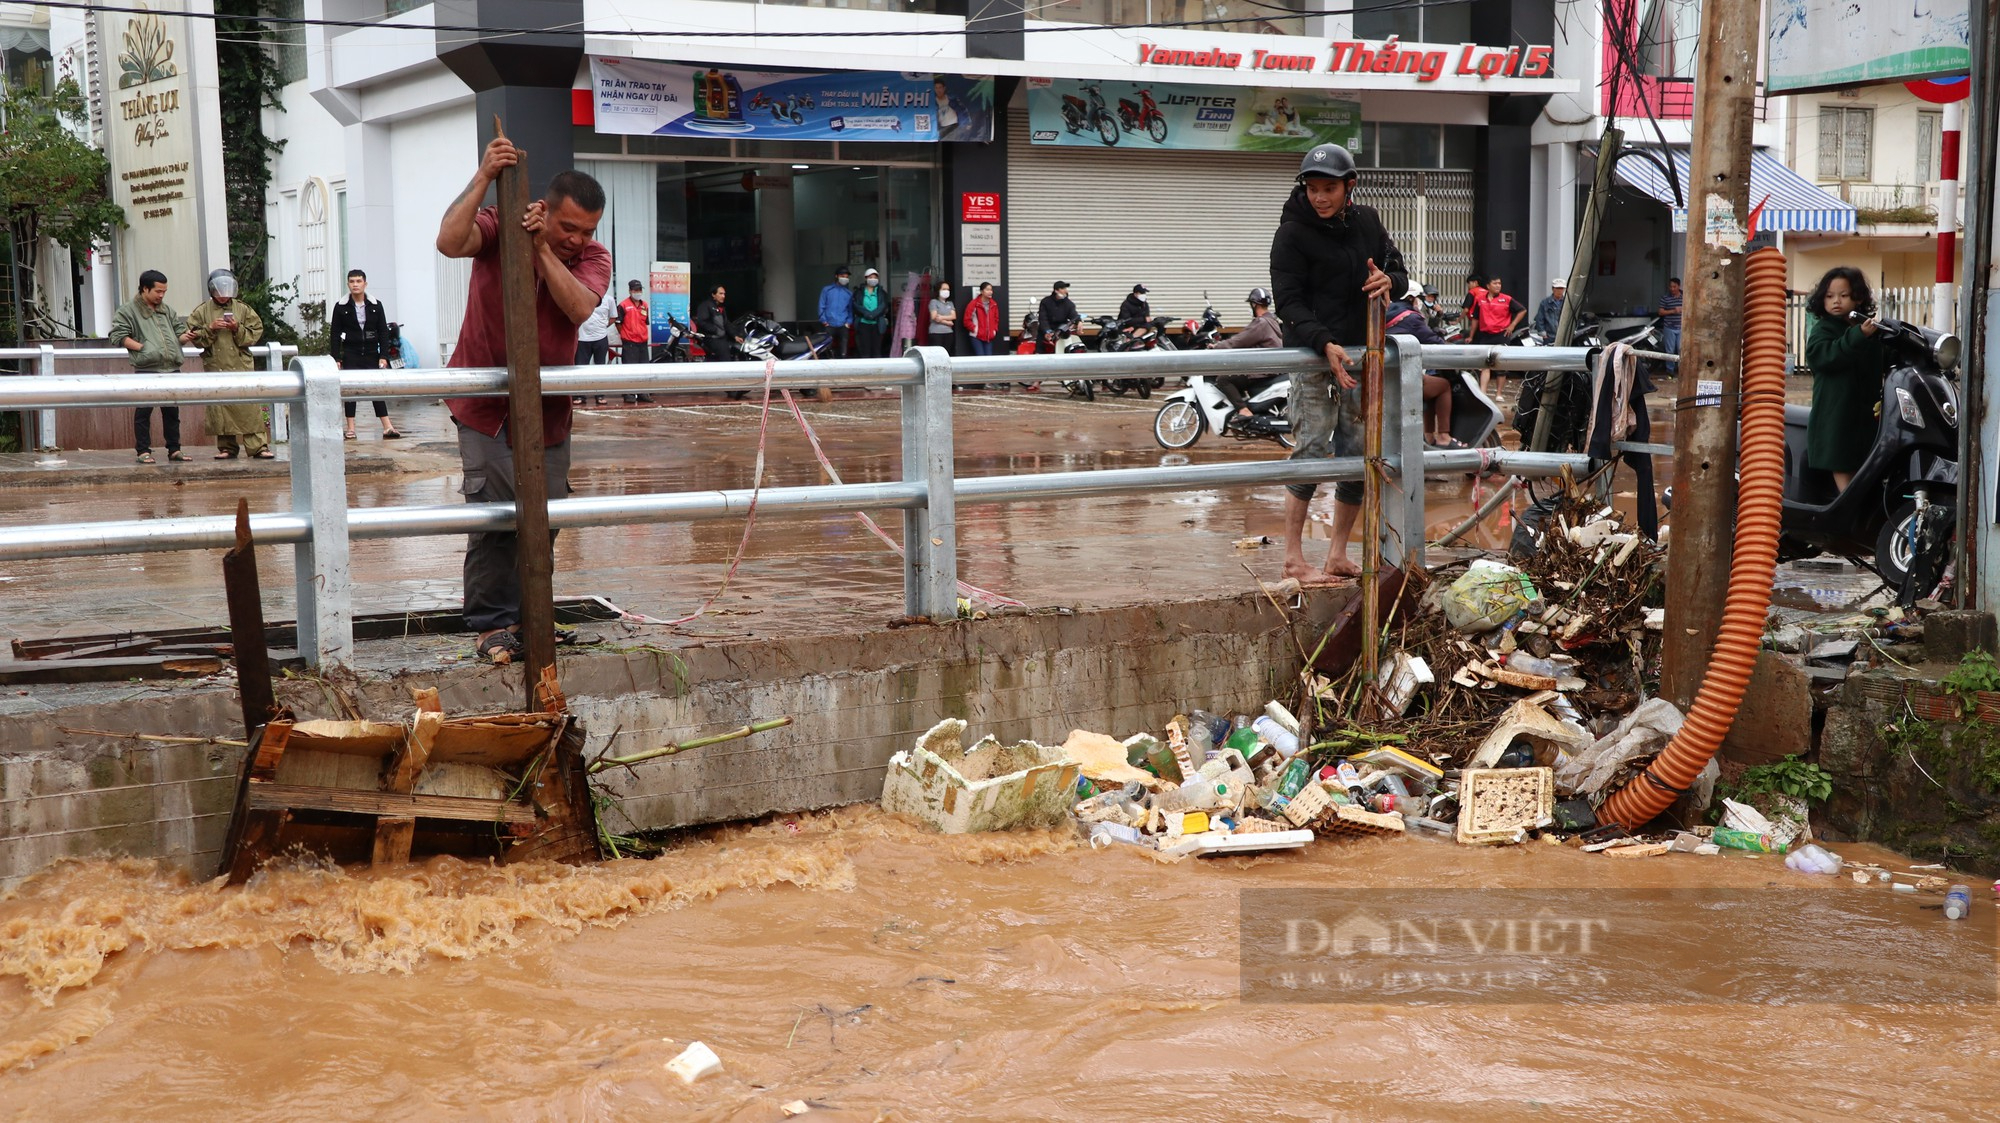 Ảnh: Người dân đường Phan Đình Phùng ở Đà Lạt bì bõm dọn nhà sau cơn mưa lớn - Ảnh 2.